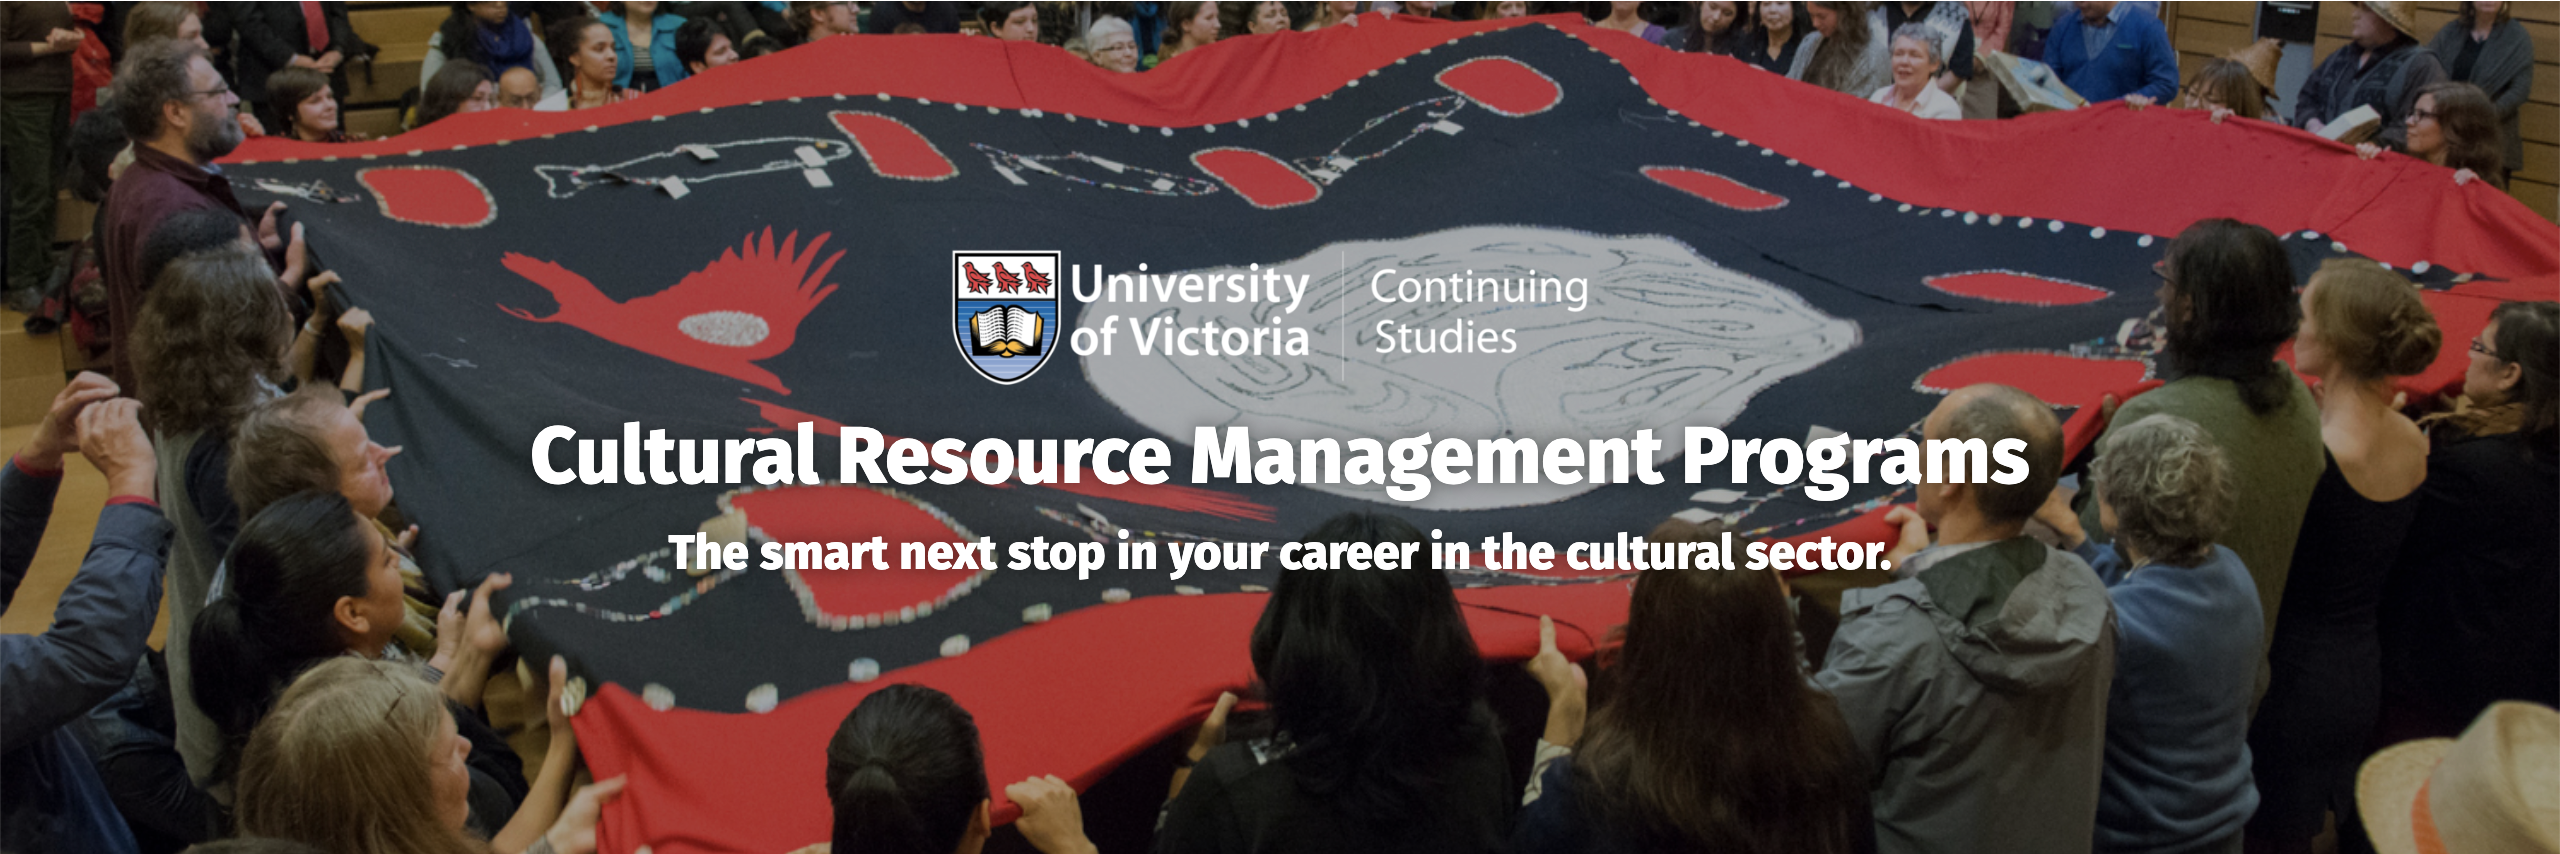 University of Victoria Cultural Resource Management Program Sponsor Banner